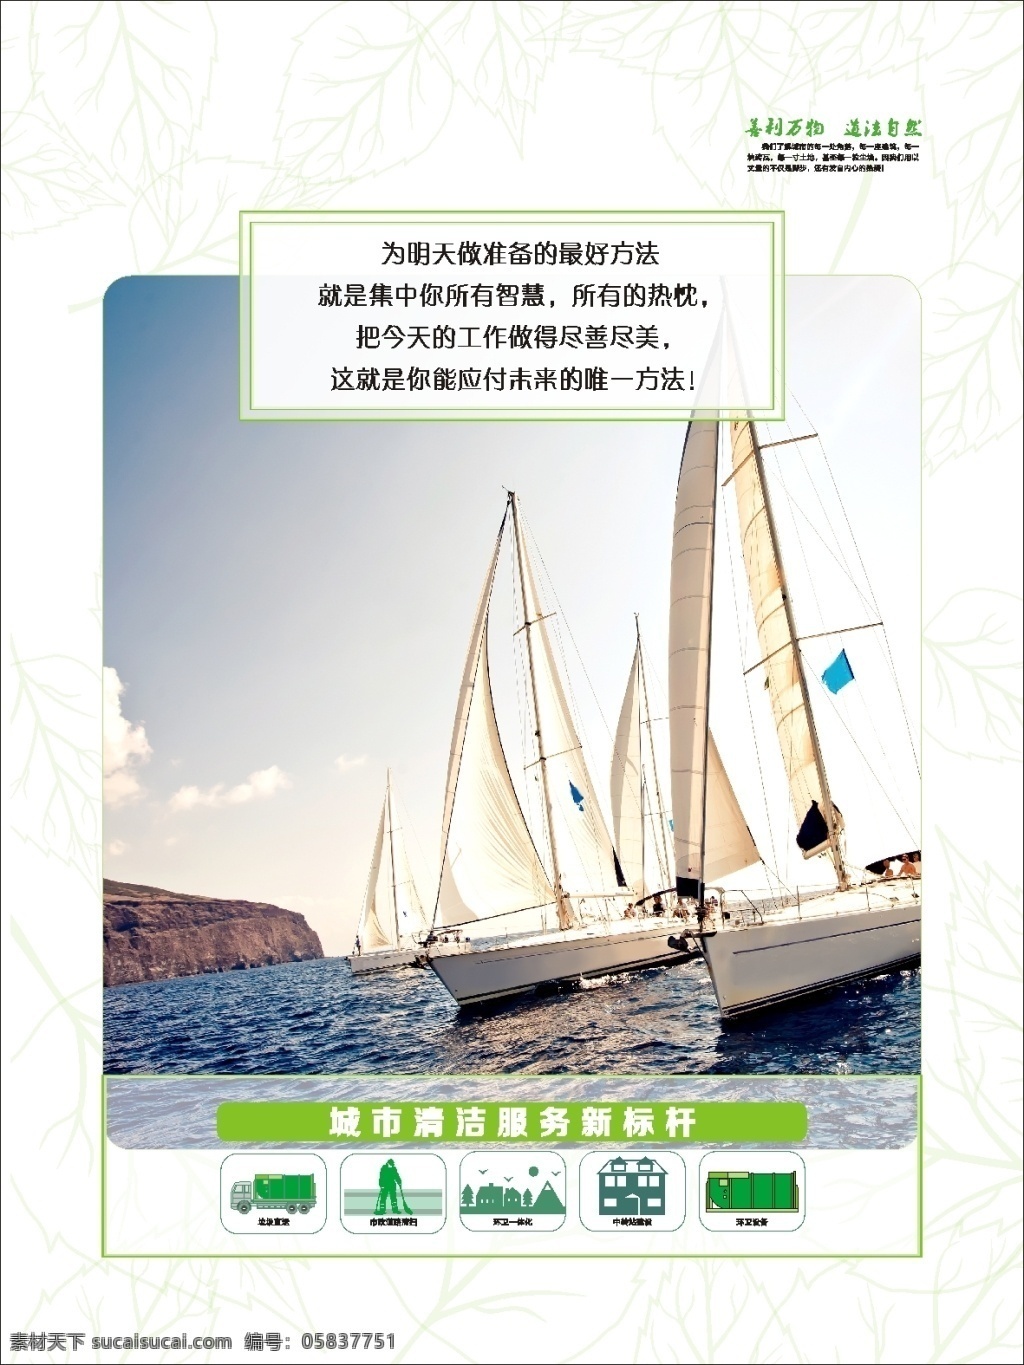 企业文化制度 文化 海报 制度 制度海报 宣传 船 帆船 企业 海 树叶 底纹